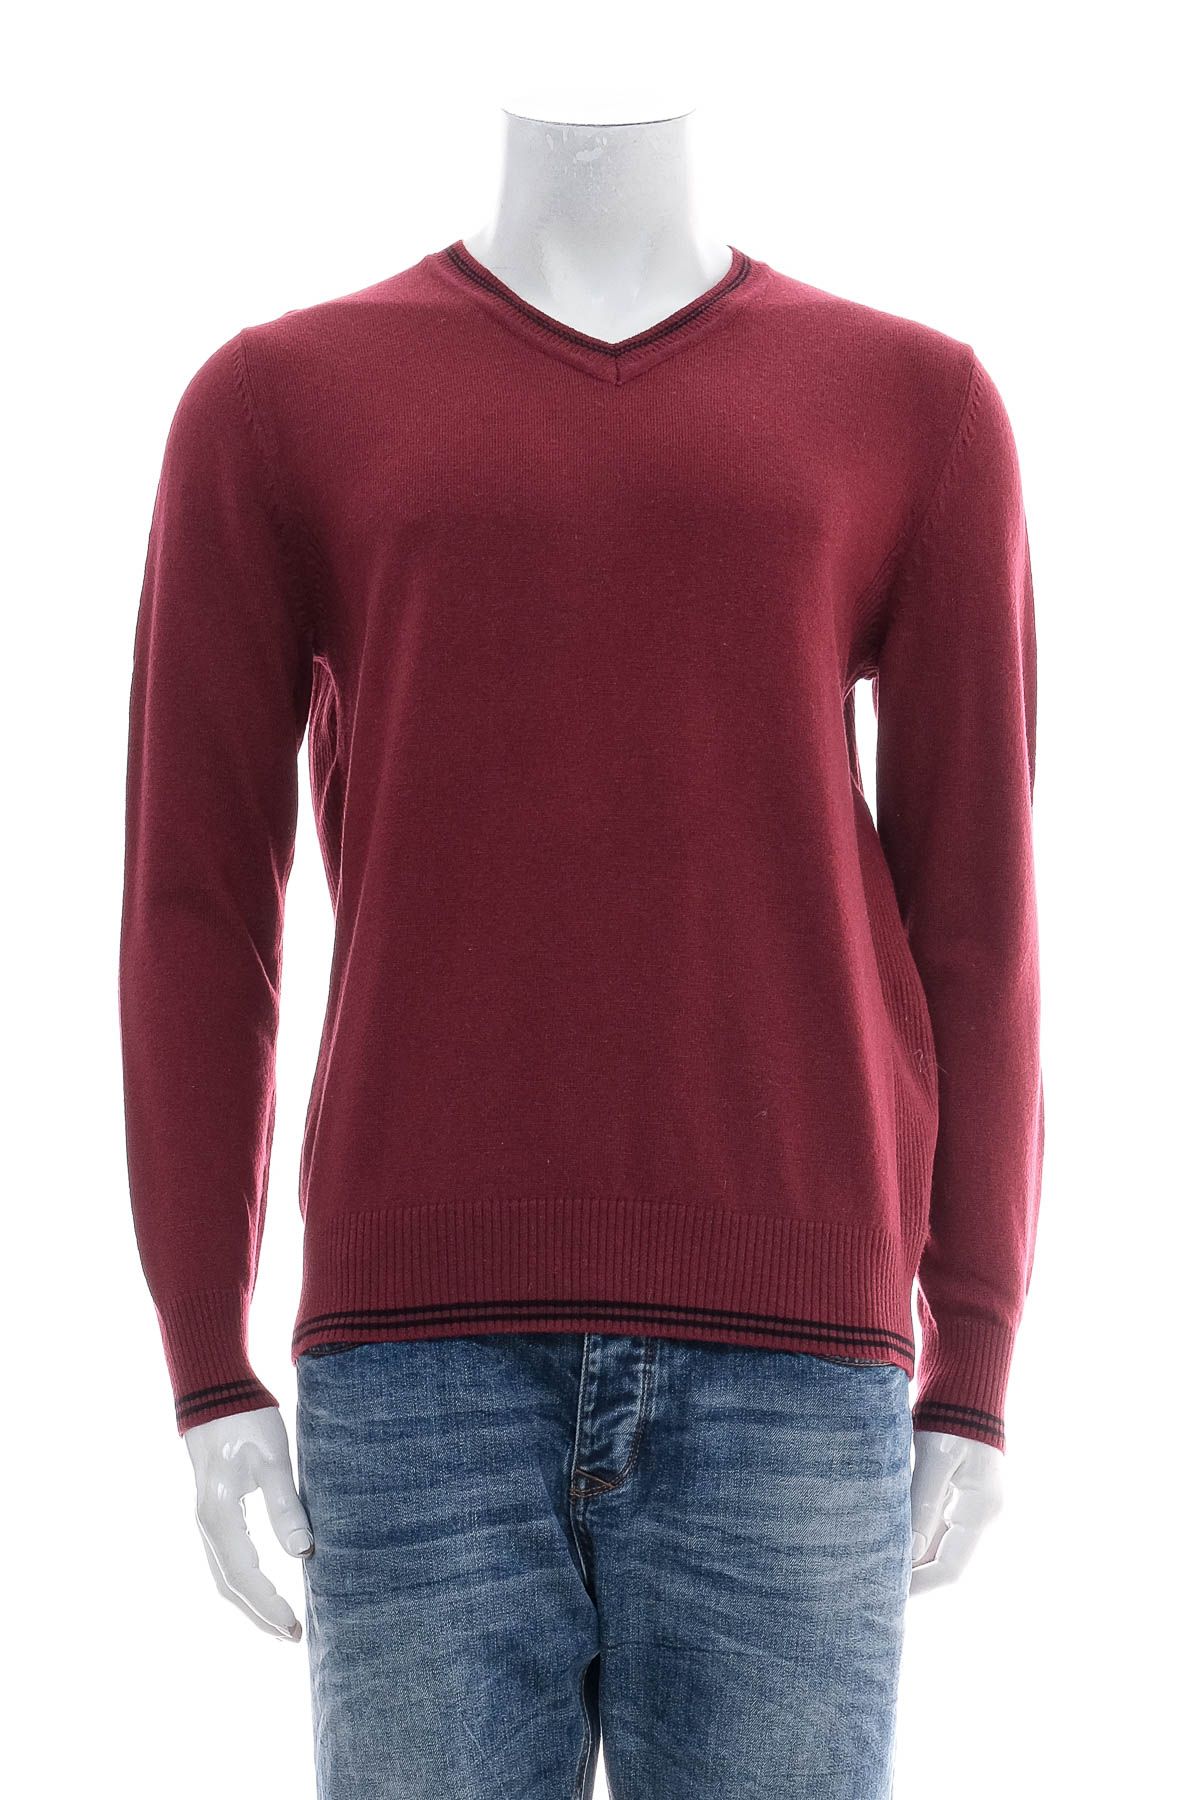 Men's sweater - HANG TEN - 0